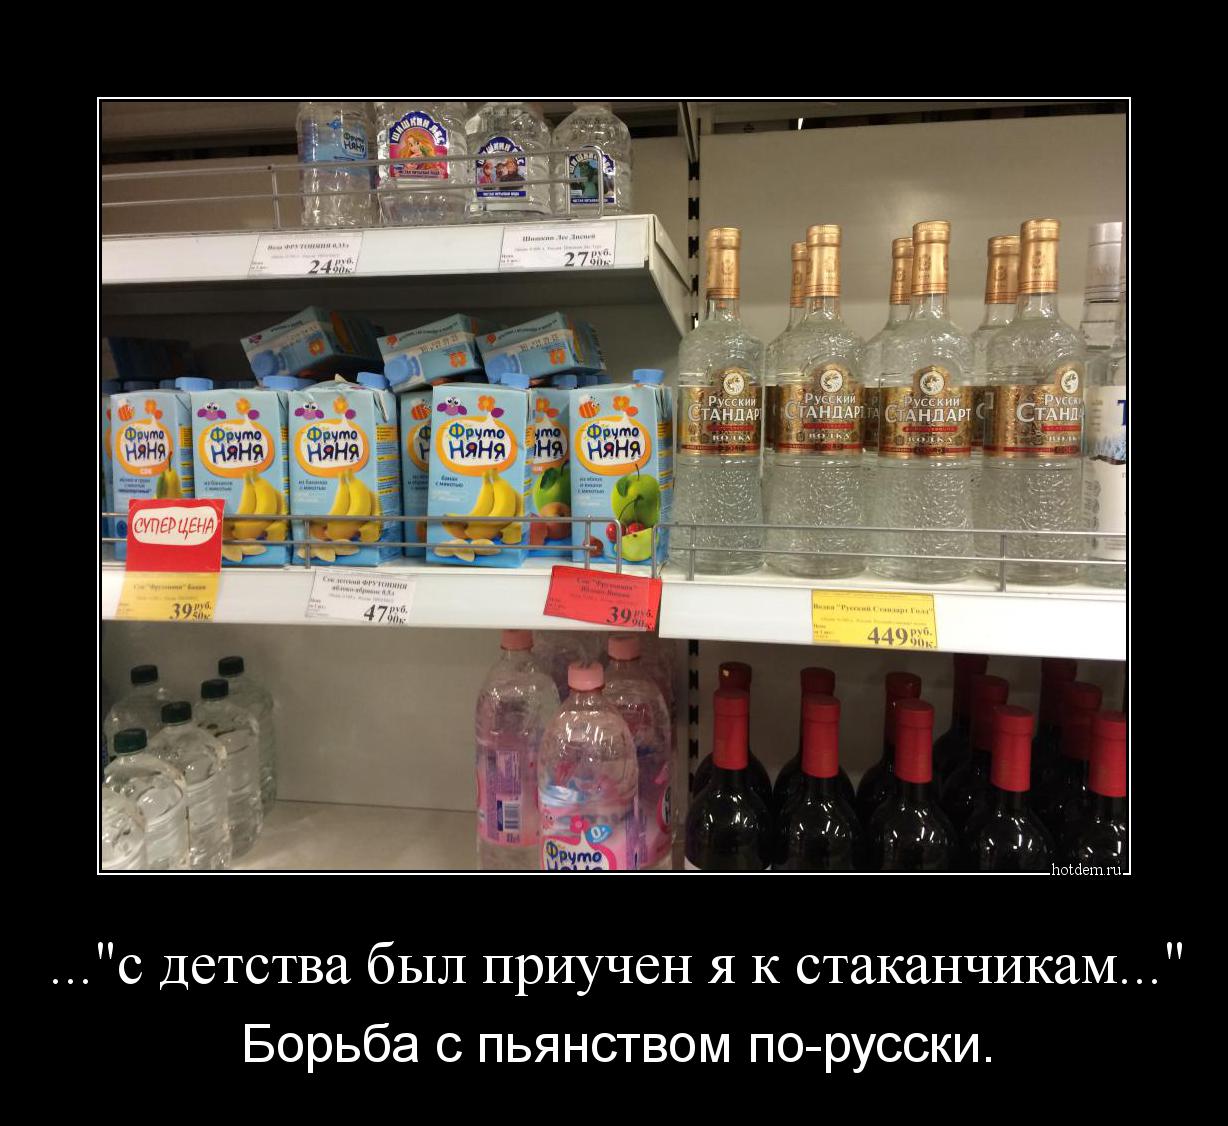 ..."с детства был приучен я к стаканчикам..." Борьба с пьянством по-русски.